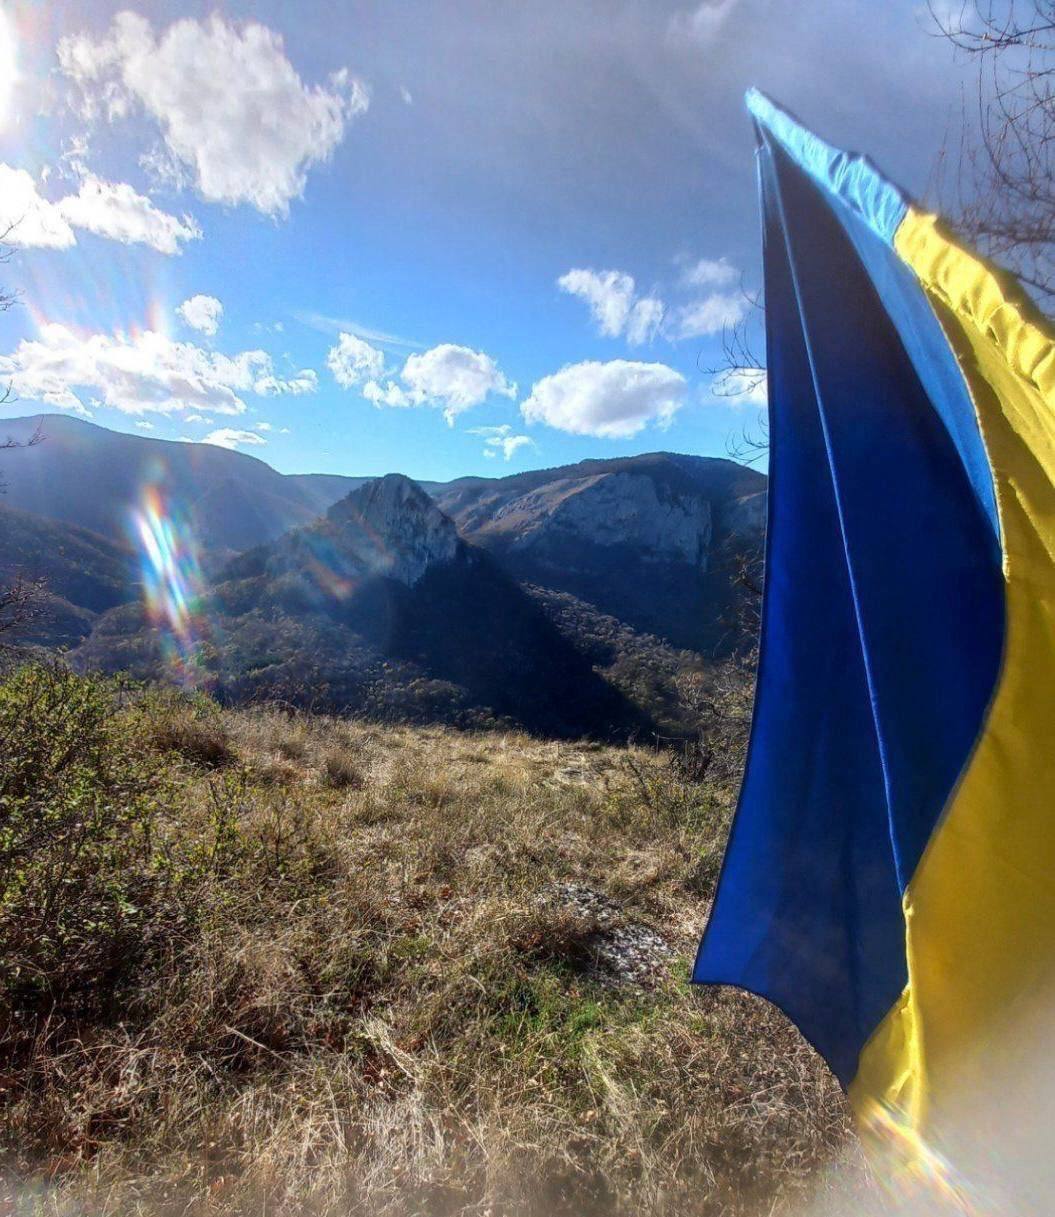 Flaga Ukrainy